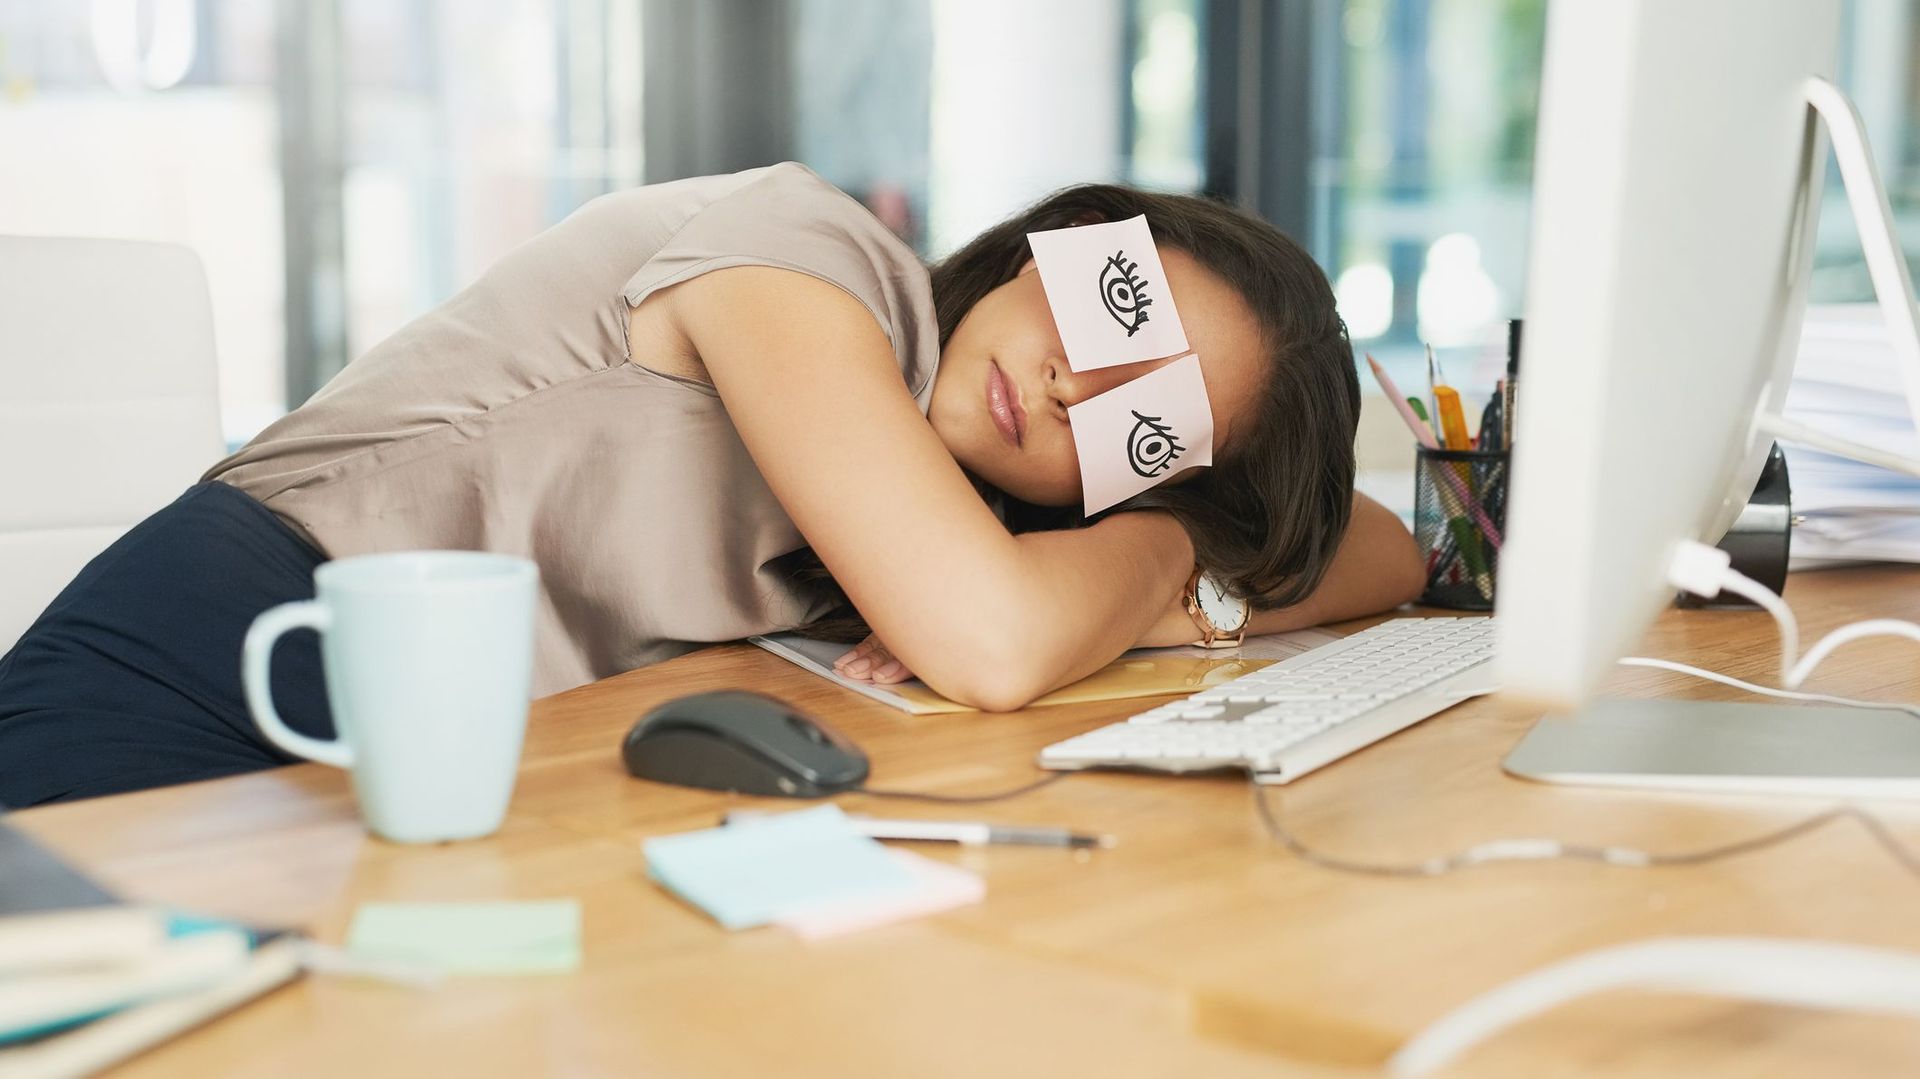 Faire une sieste au travail contribue à prévenir le burn-out